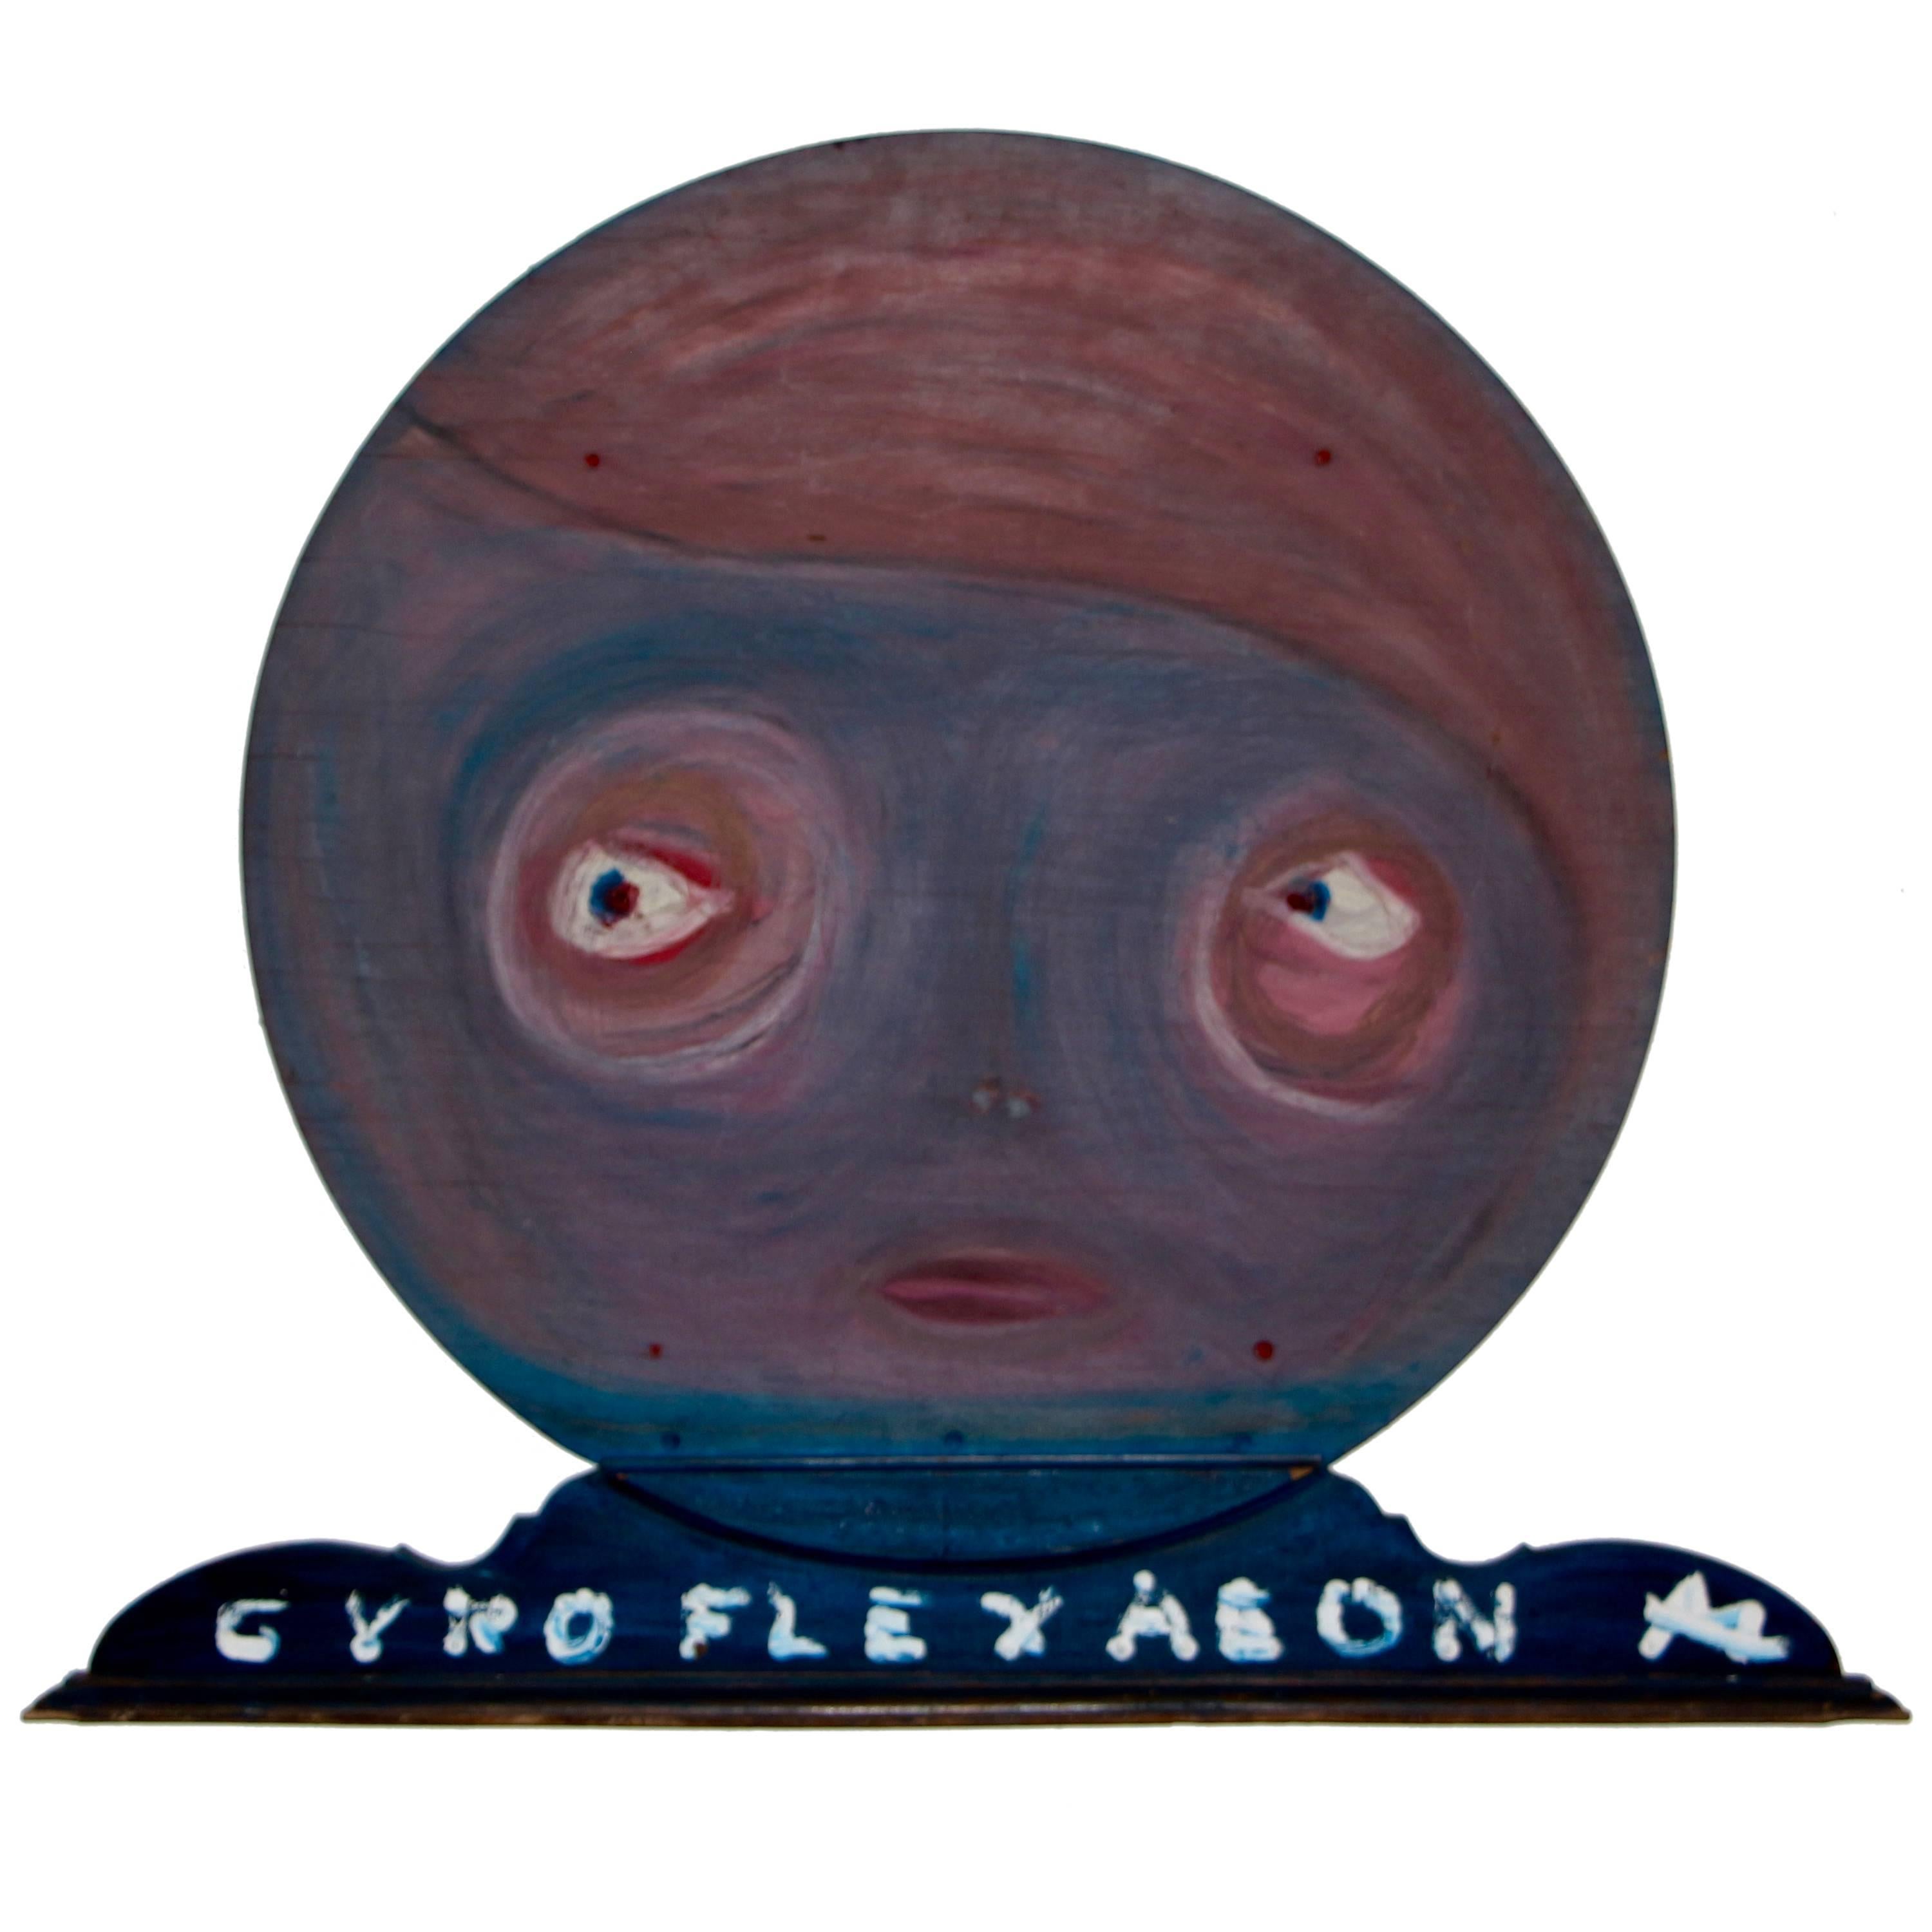 Gyroflexaeon-Wandskulptur eines bekannten Künstlers aus Woodstock